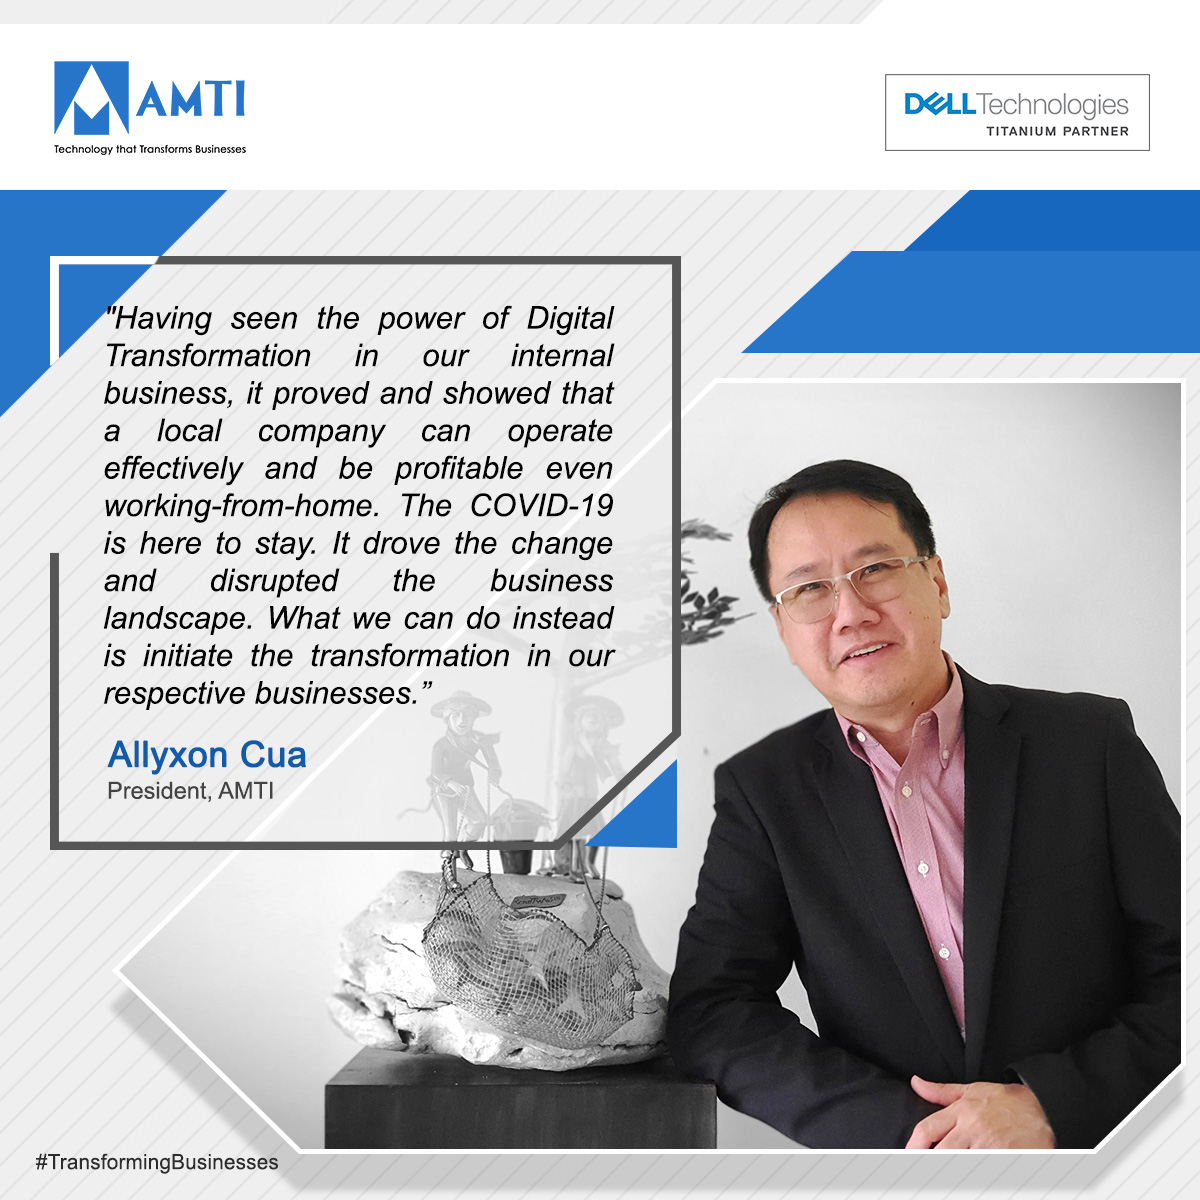 Mr Allyxon Cua – AMTI President